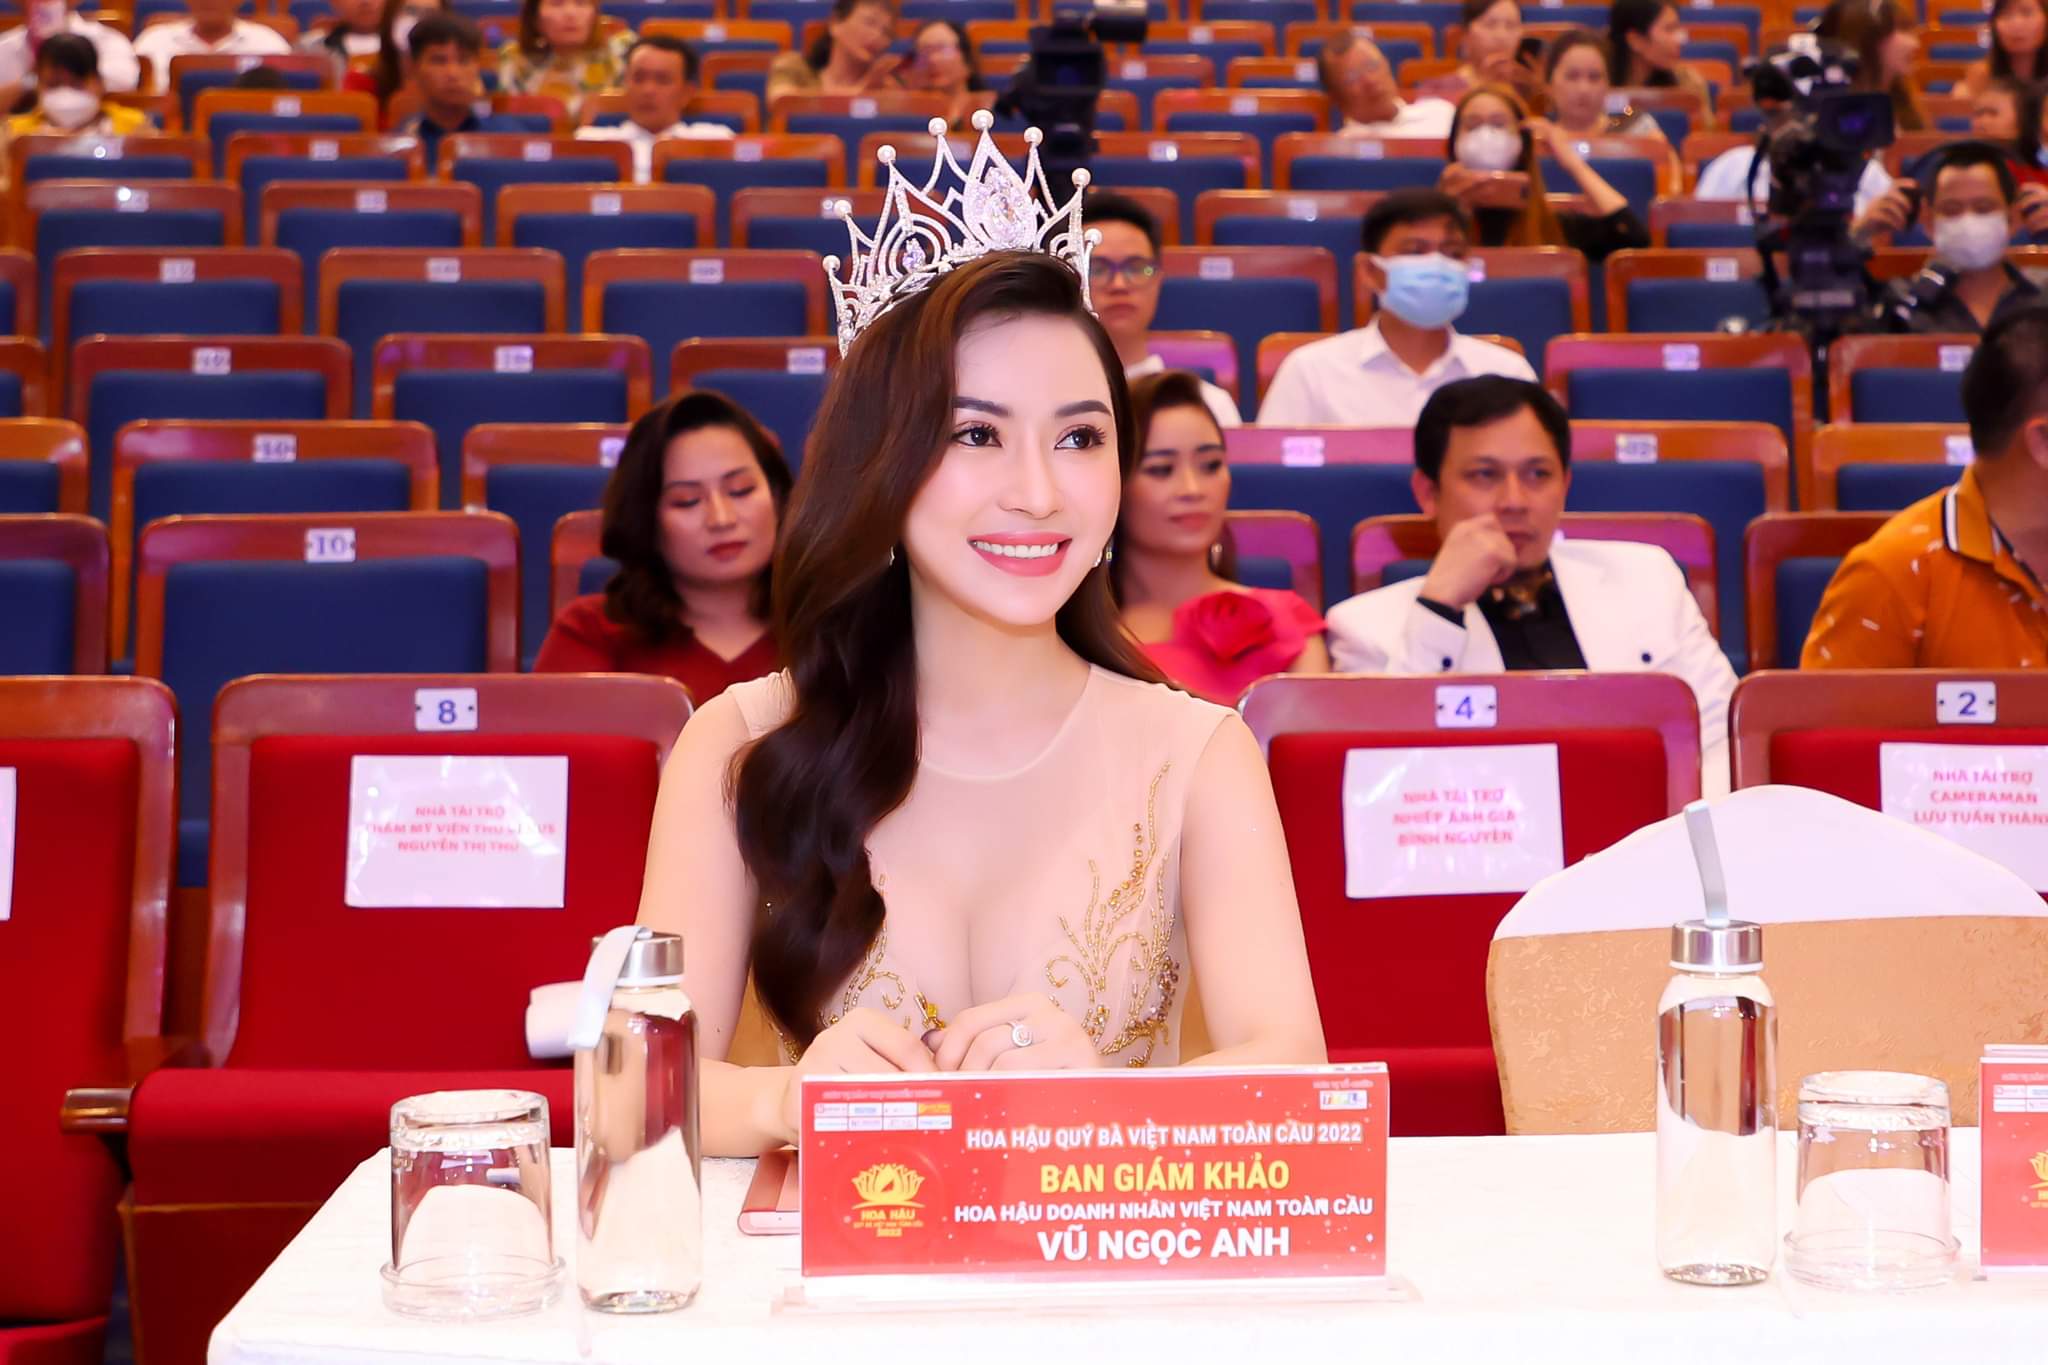 Hoa hậu Vũ Ngọc Anh làm phó trưởng BGK 'Hoa hậu Quý bà Việt Nam Toàn cầu 2022'